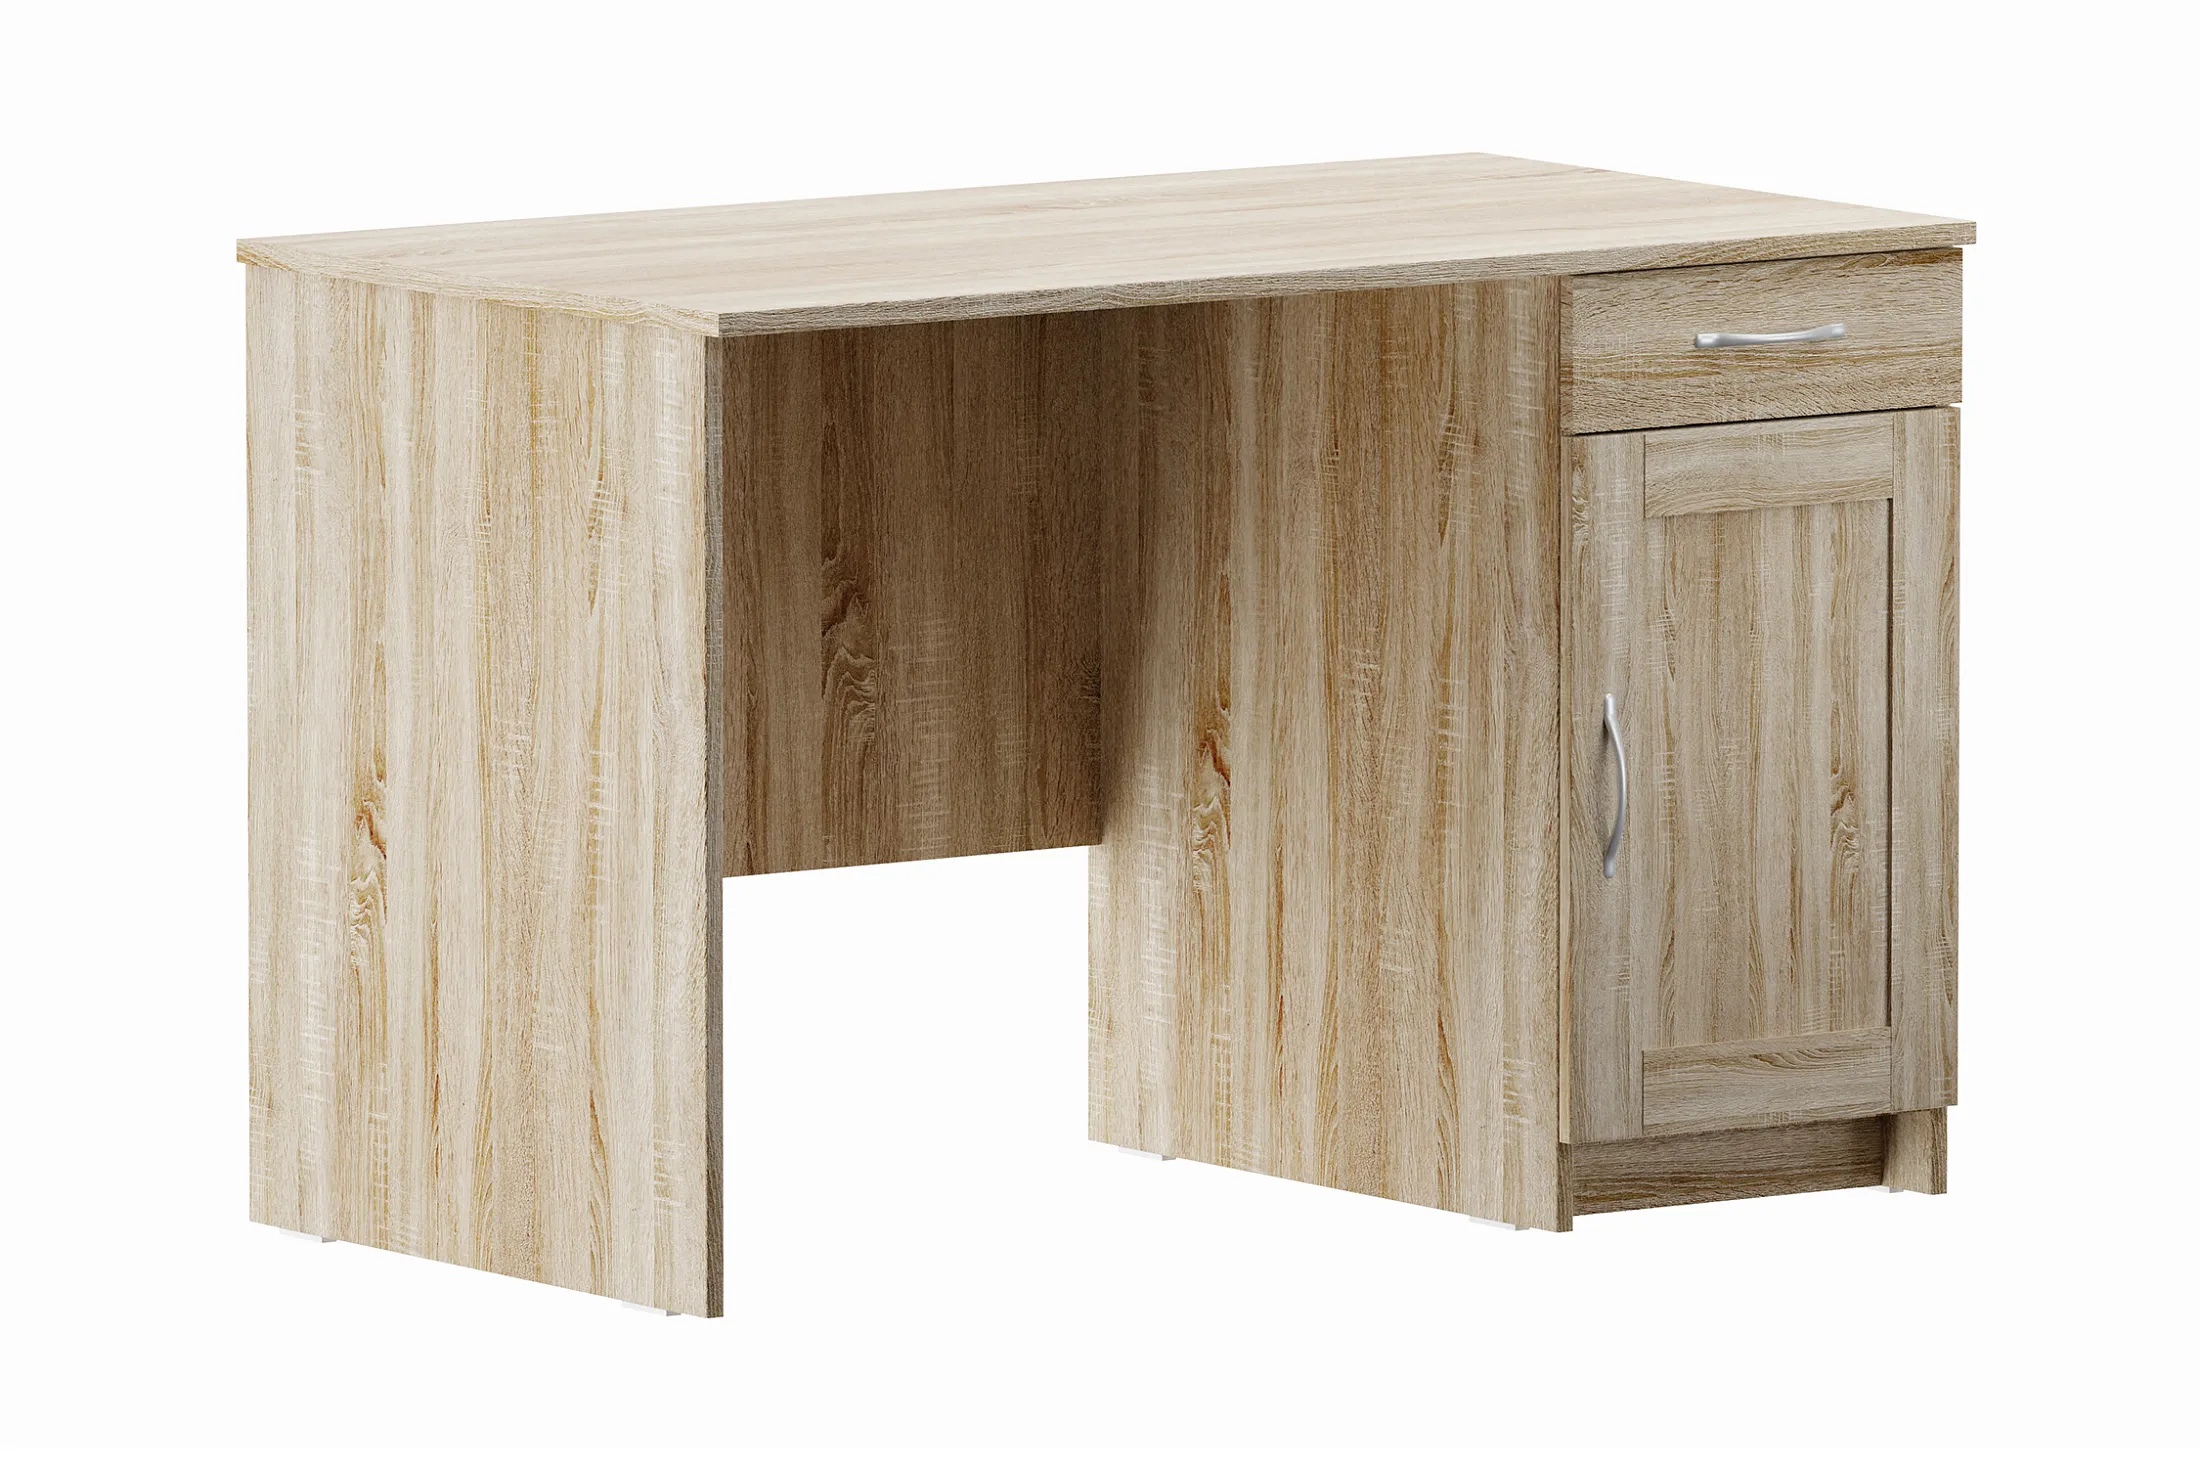 Письменный стол с тумбой Кастор - аналог IKEA KULLEN,115х65х75,сонома